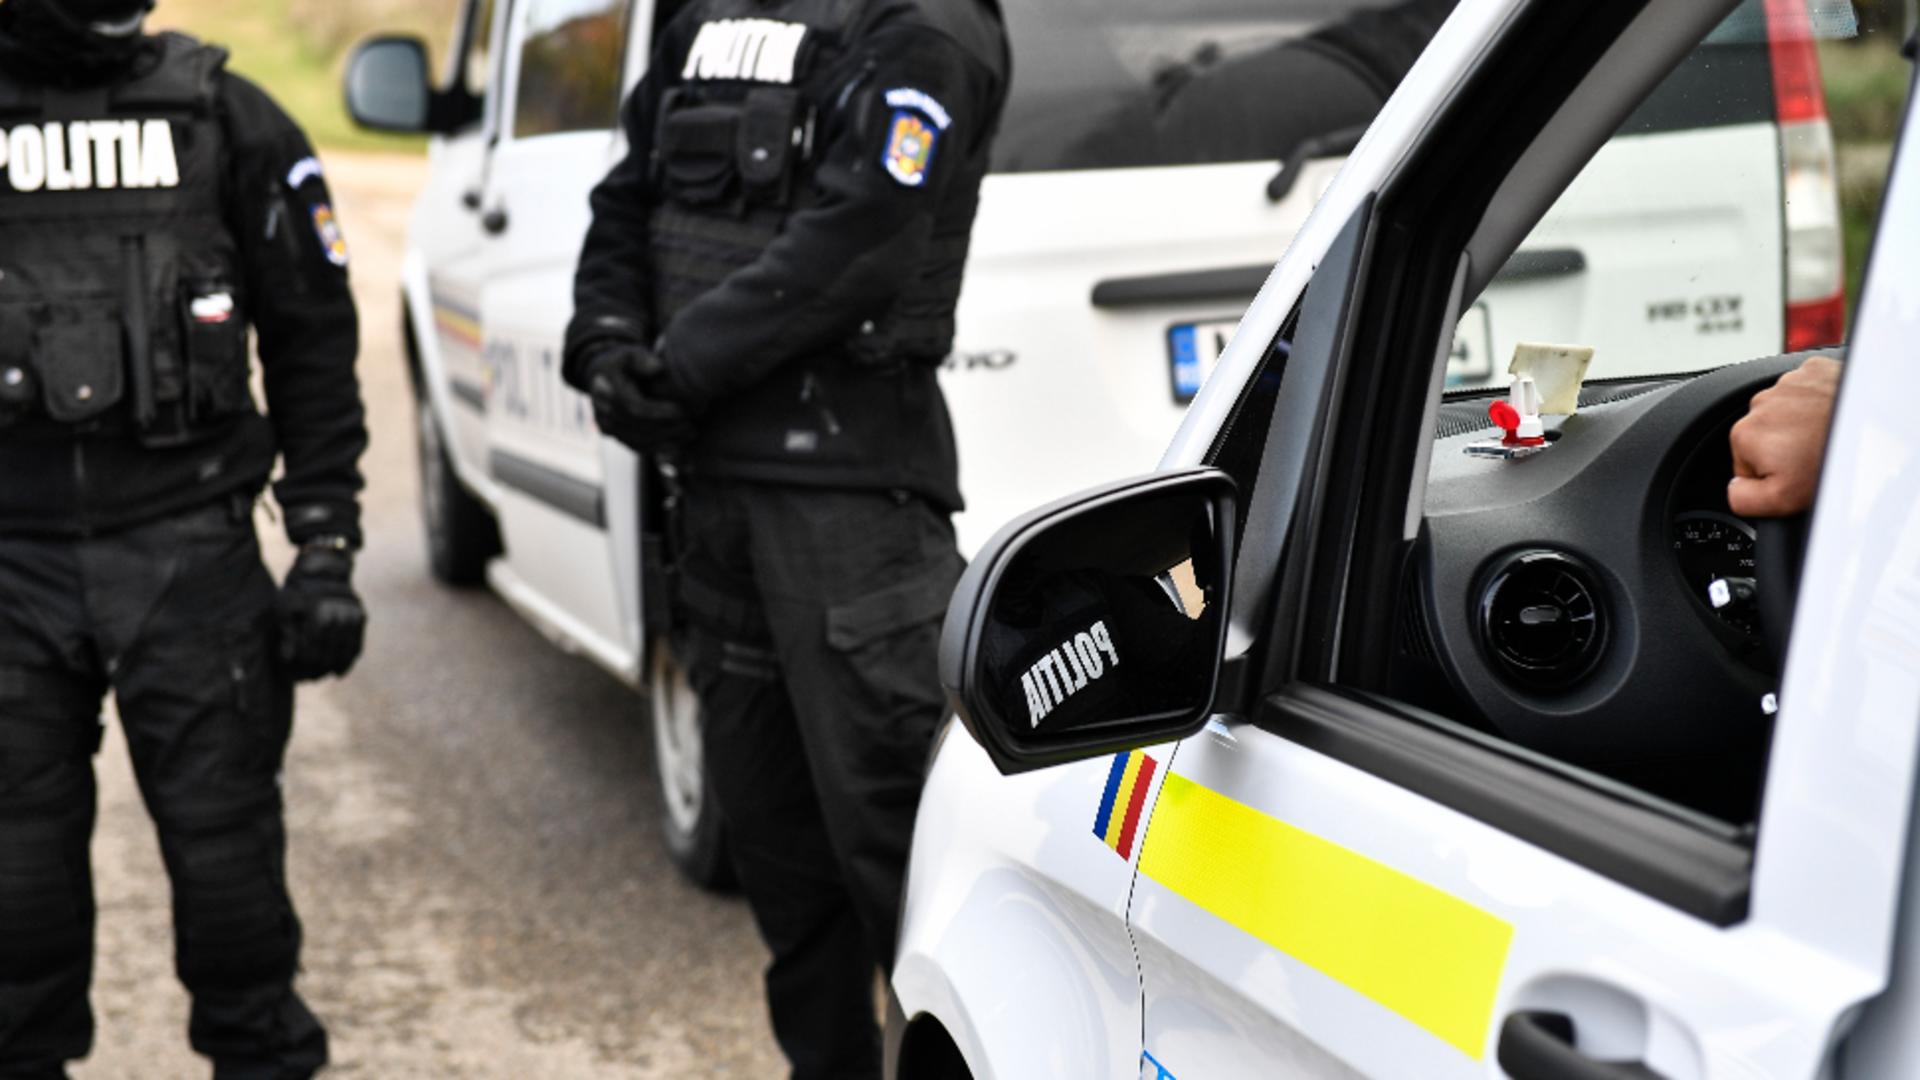 Percheziții la traficanții de țigări din Timișoara. Mascații au spart mașinile cu răngile/ Foto: Inquam Photos